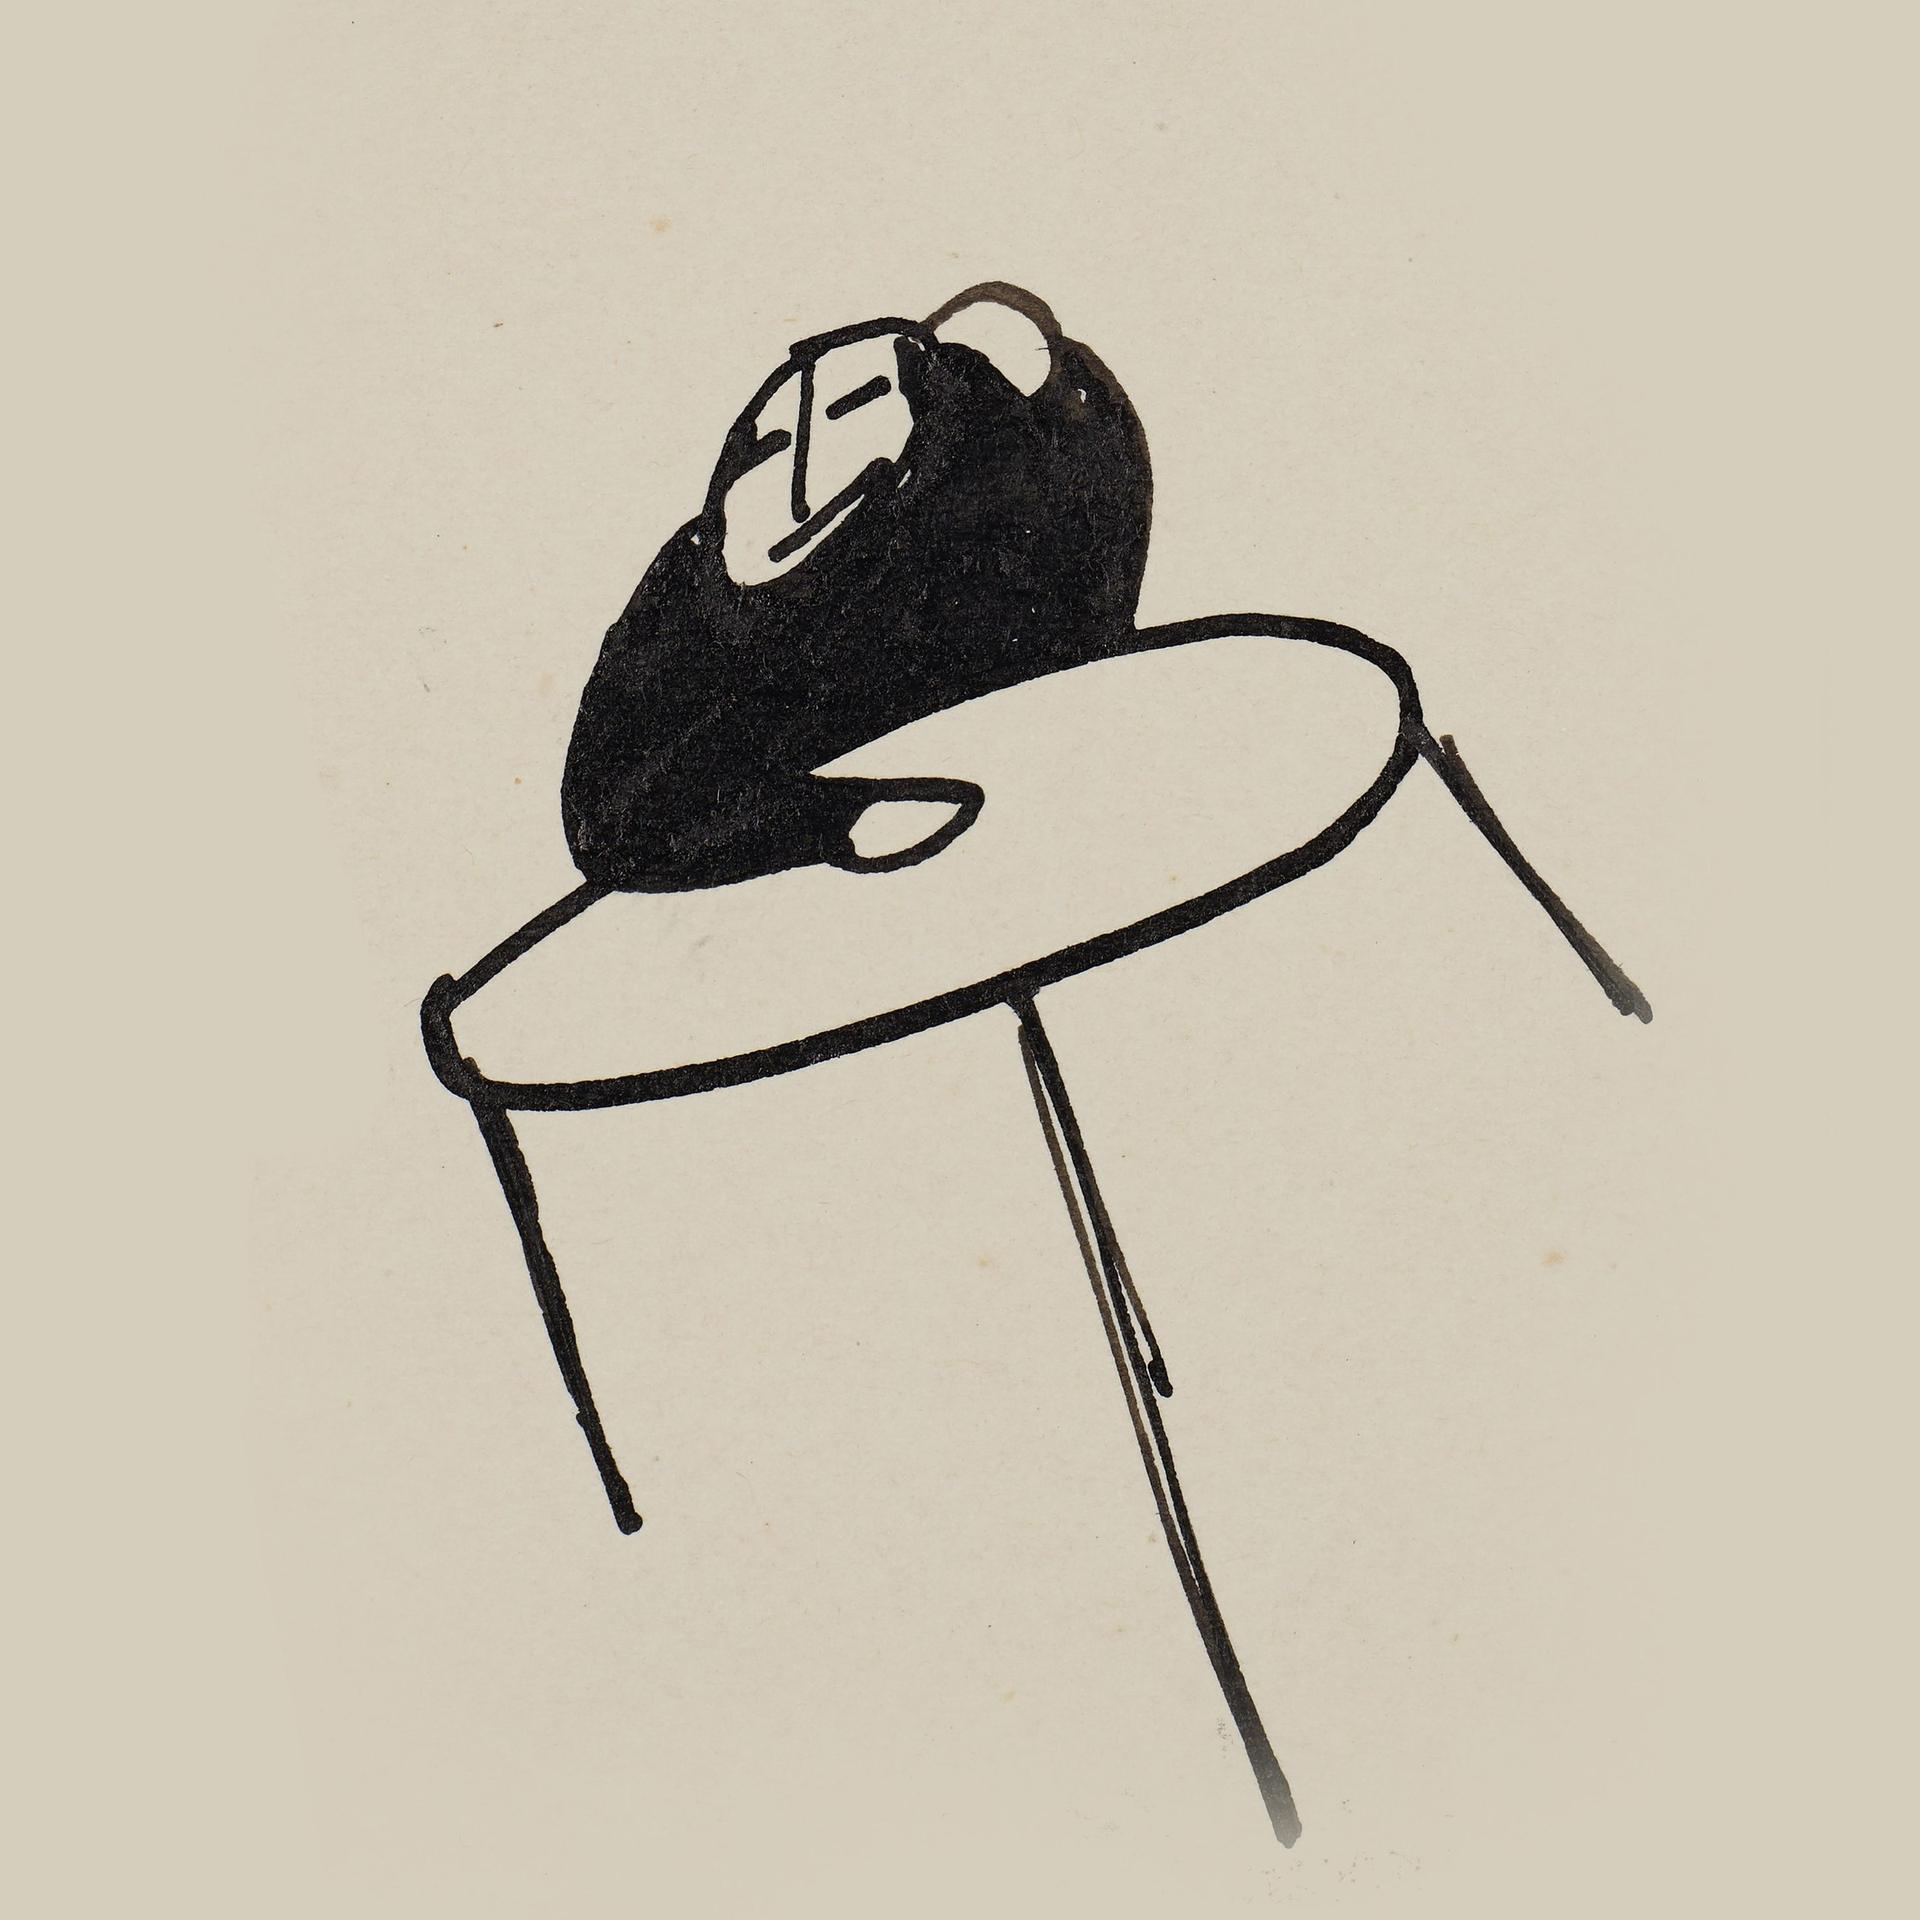 Kafkas Zeichnung eines Menschen an einem Tisch